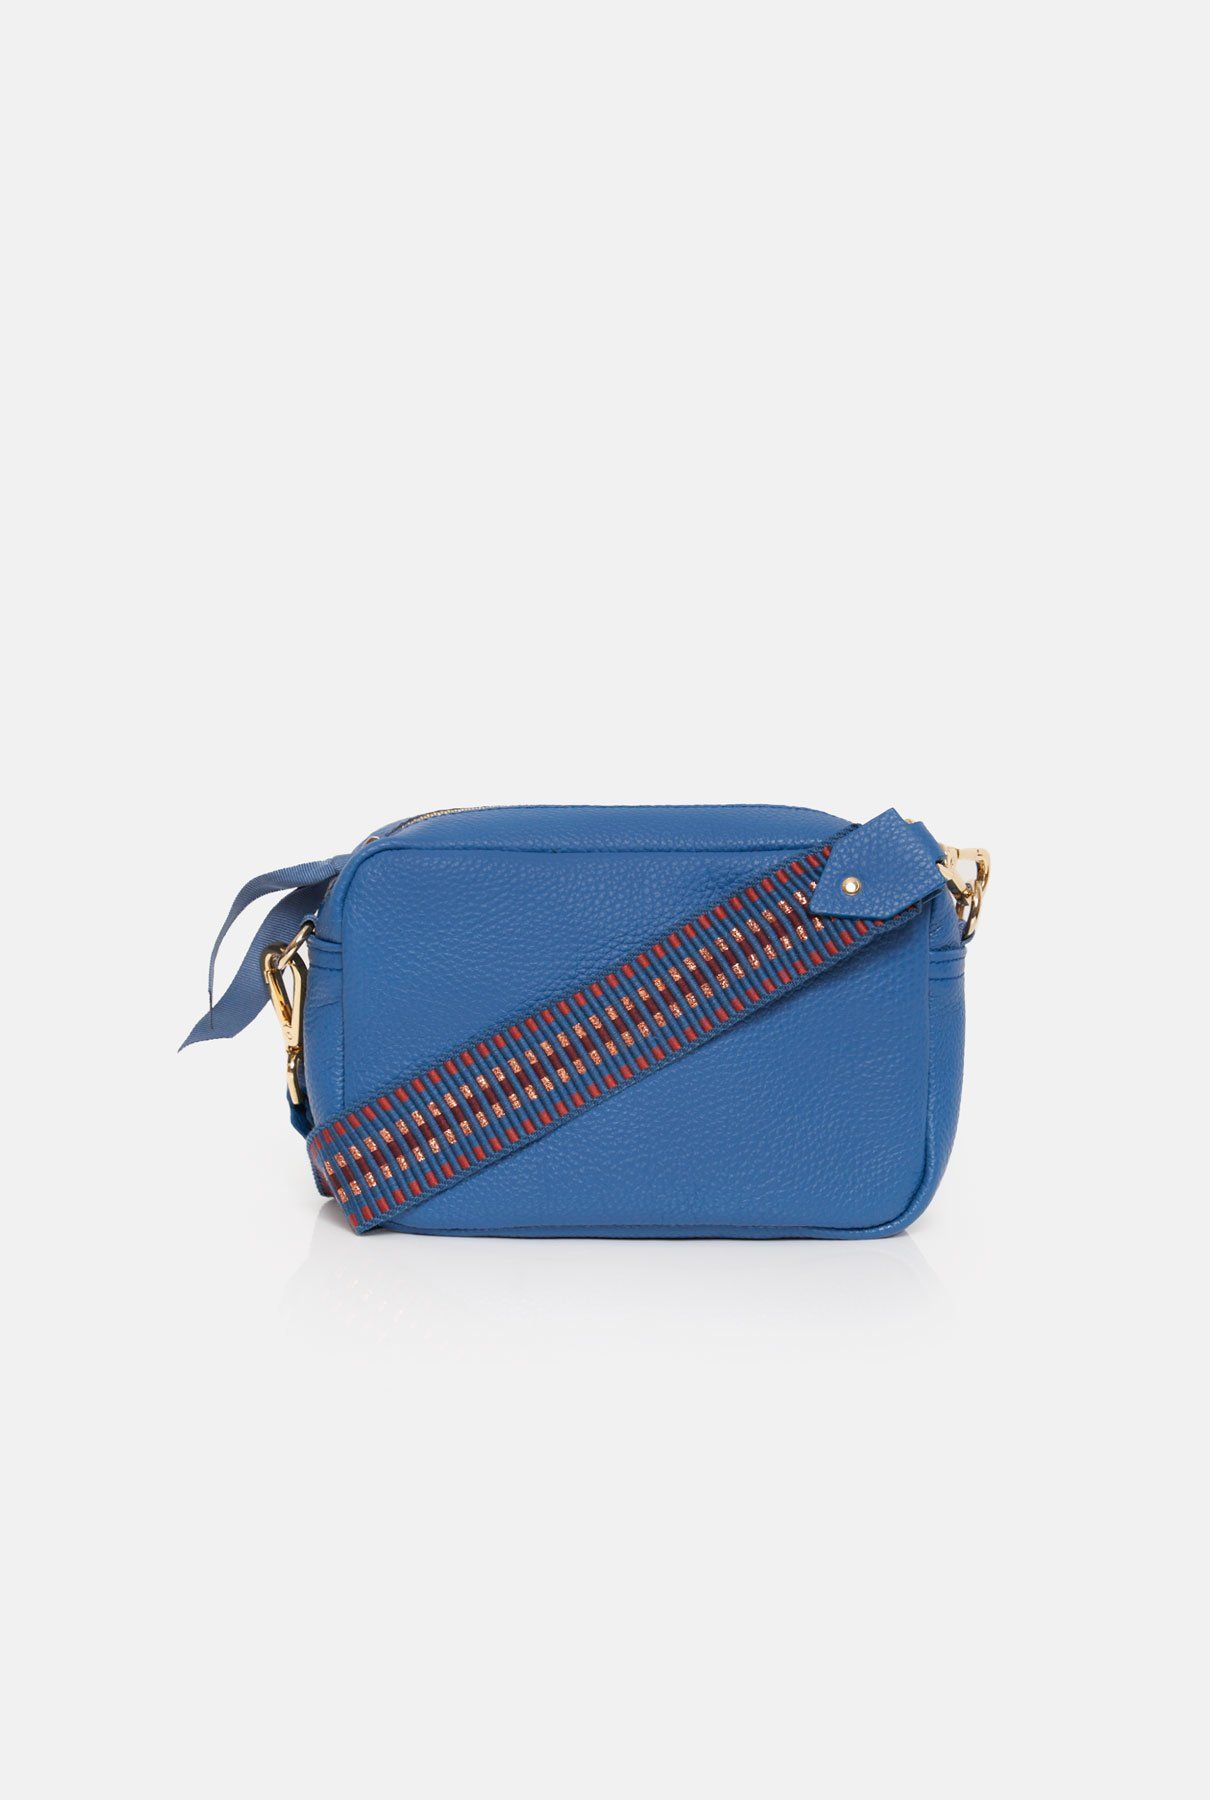 The mini Sabela Bag azul bag The Bag Lab